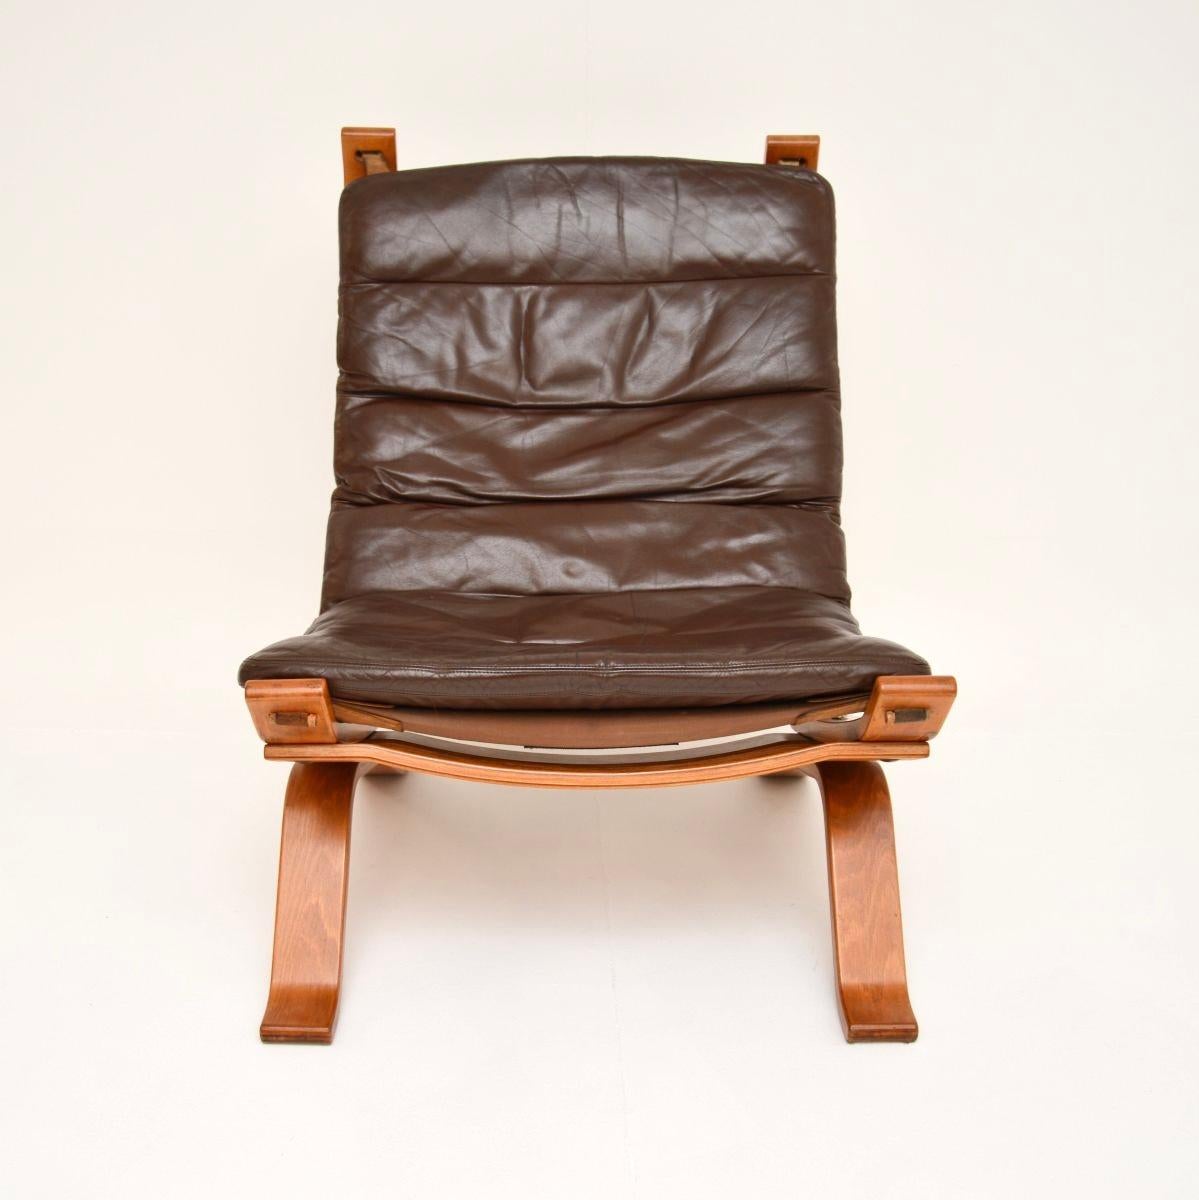 Chaise de salon danoise en cuir vintage, élégante et extrêmement confortable, datant des années 1970, par Bramin.

Il est d'une superbe qualité et présente un design élégant et bien construit. Le cadre en bois courbé supporte une toile élancée qui